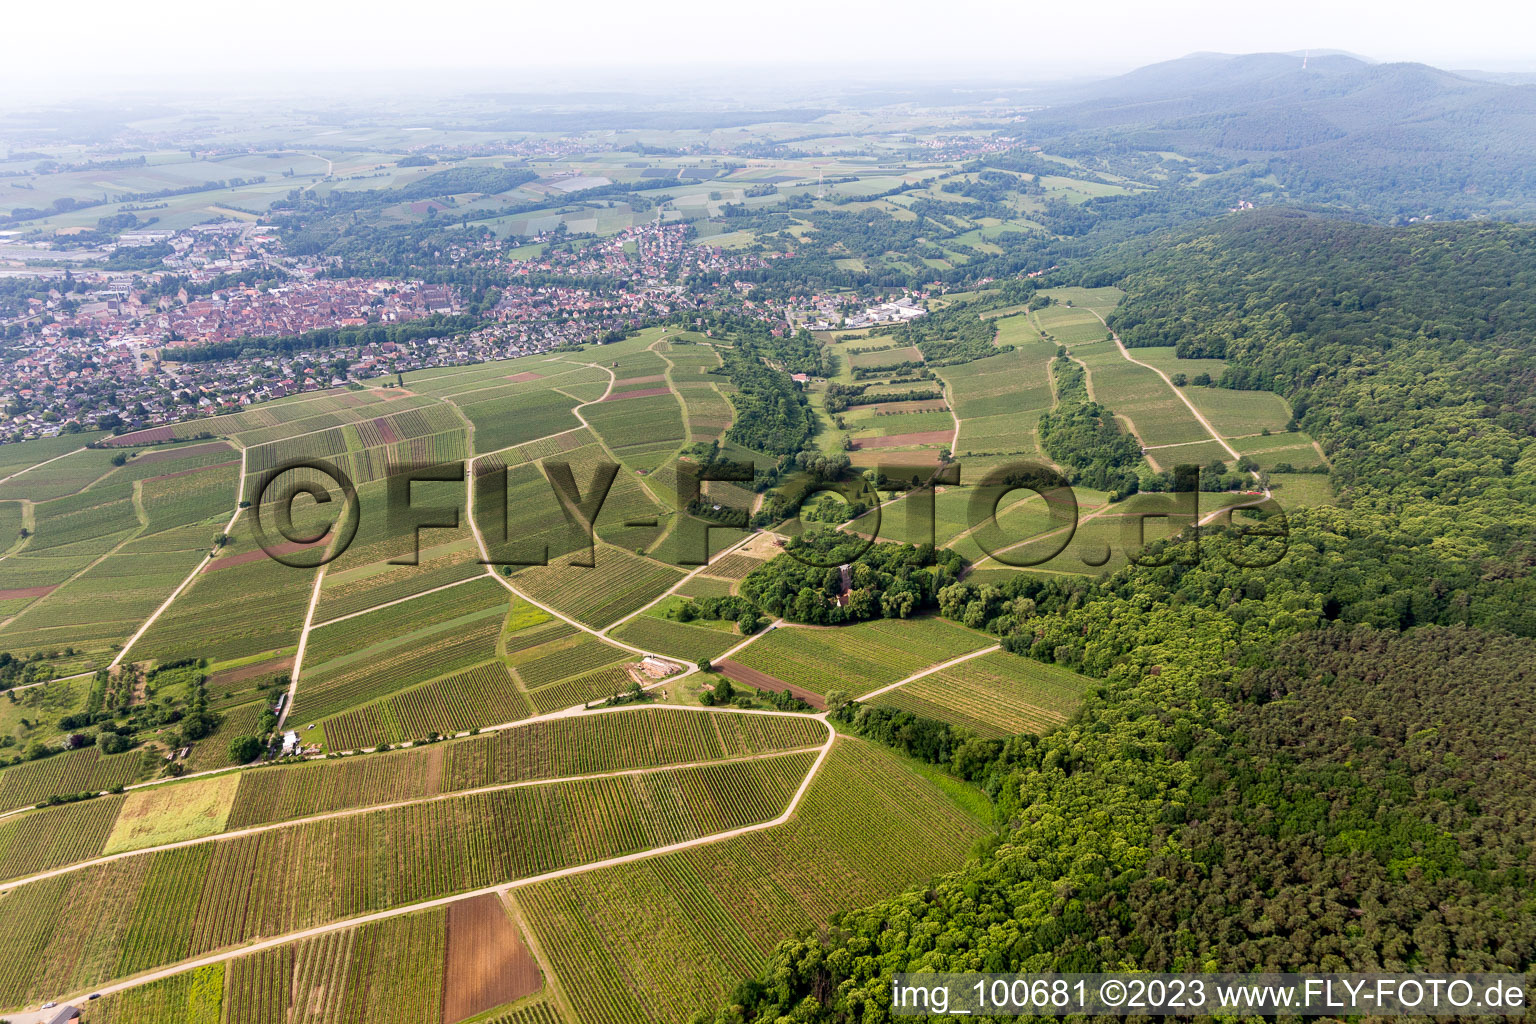 District Schweigen in Schweigen-Rechtenbach in the state Rhineland-Palatinate, Germany viewn from the air